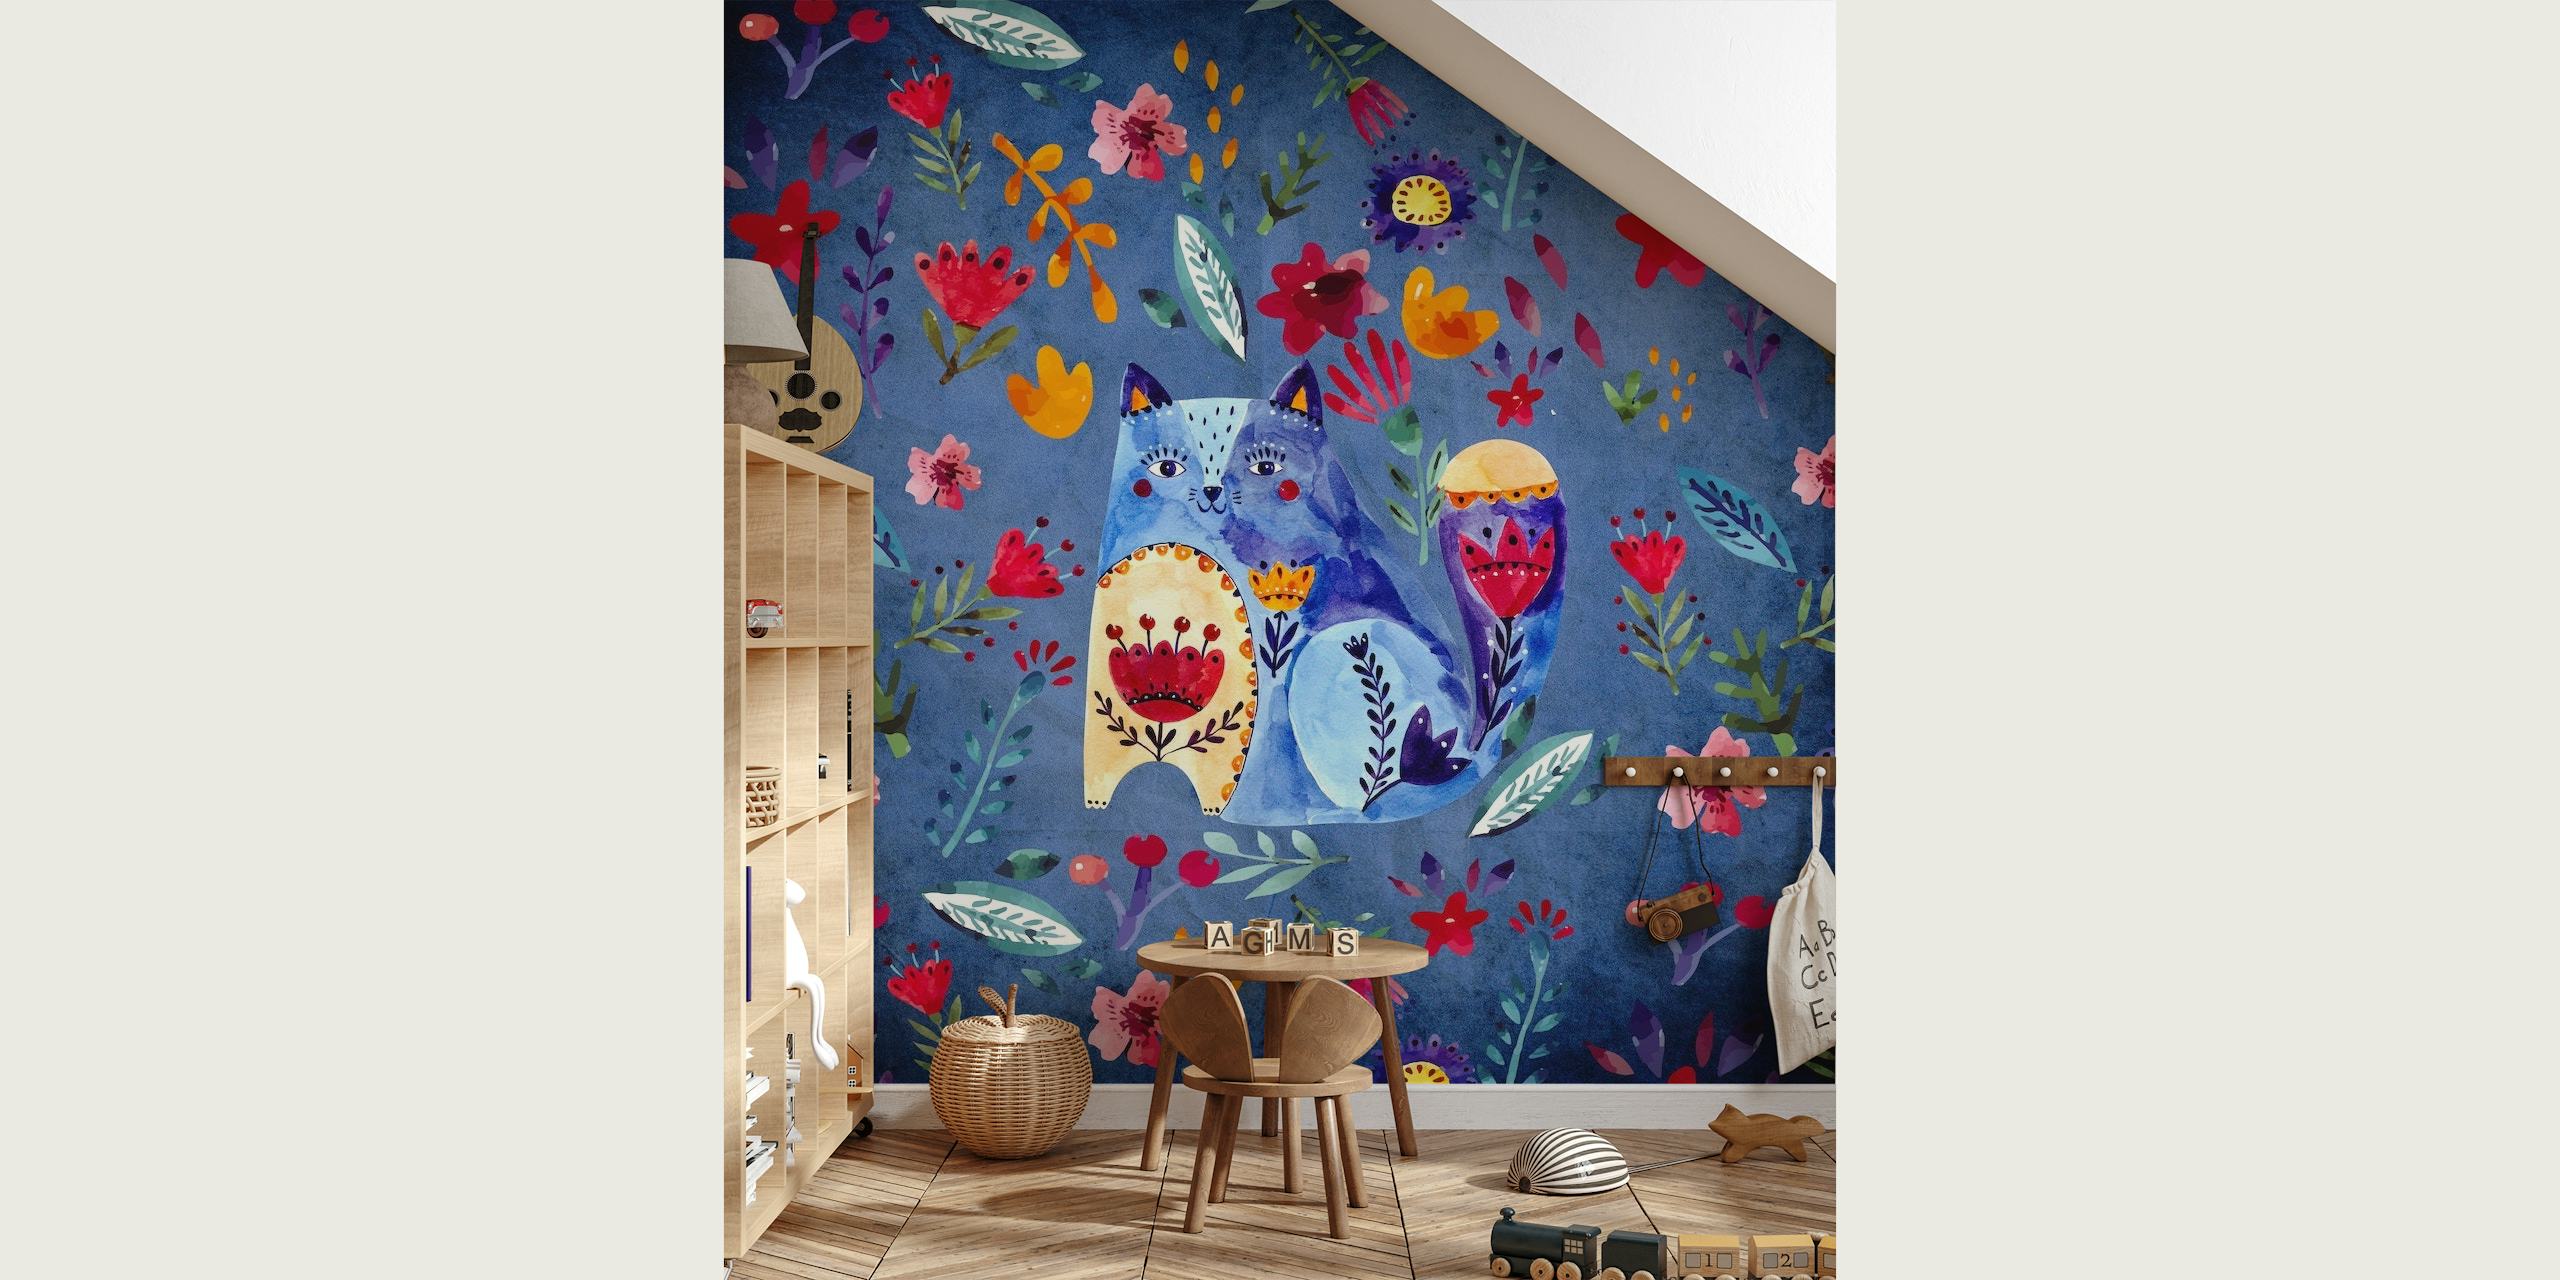 Doodle Cat and Flowers fotobehang met handgetekende katten en kleurrijke bloemenpatronen op een blauwe achtergrond.